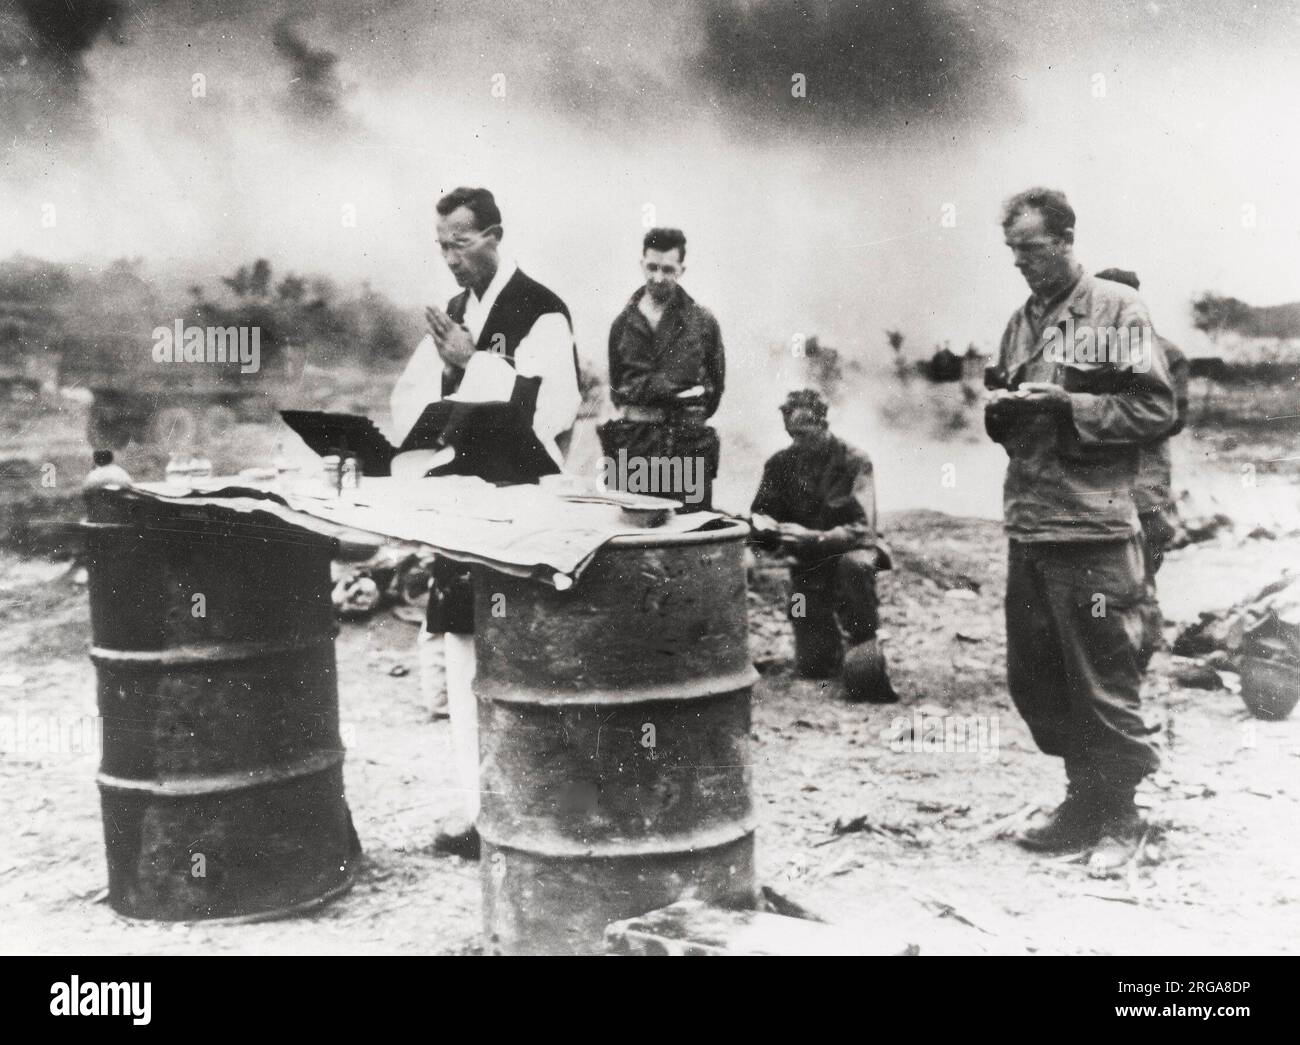 Fotografia d'epoca della seconda guerra mondiale - il cappellano americano conduce preghiere per i soldati caduti sull'isola di le Shima dopo la vittoria sull'isola sopra i giapponesi Foto Stock